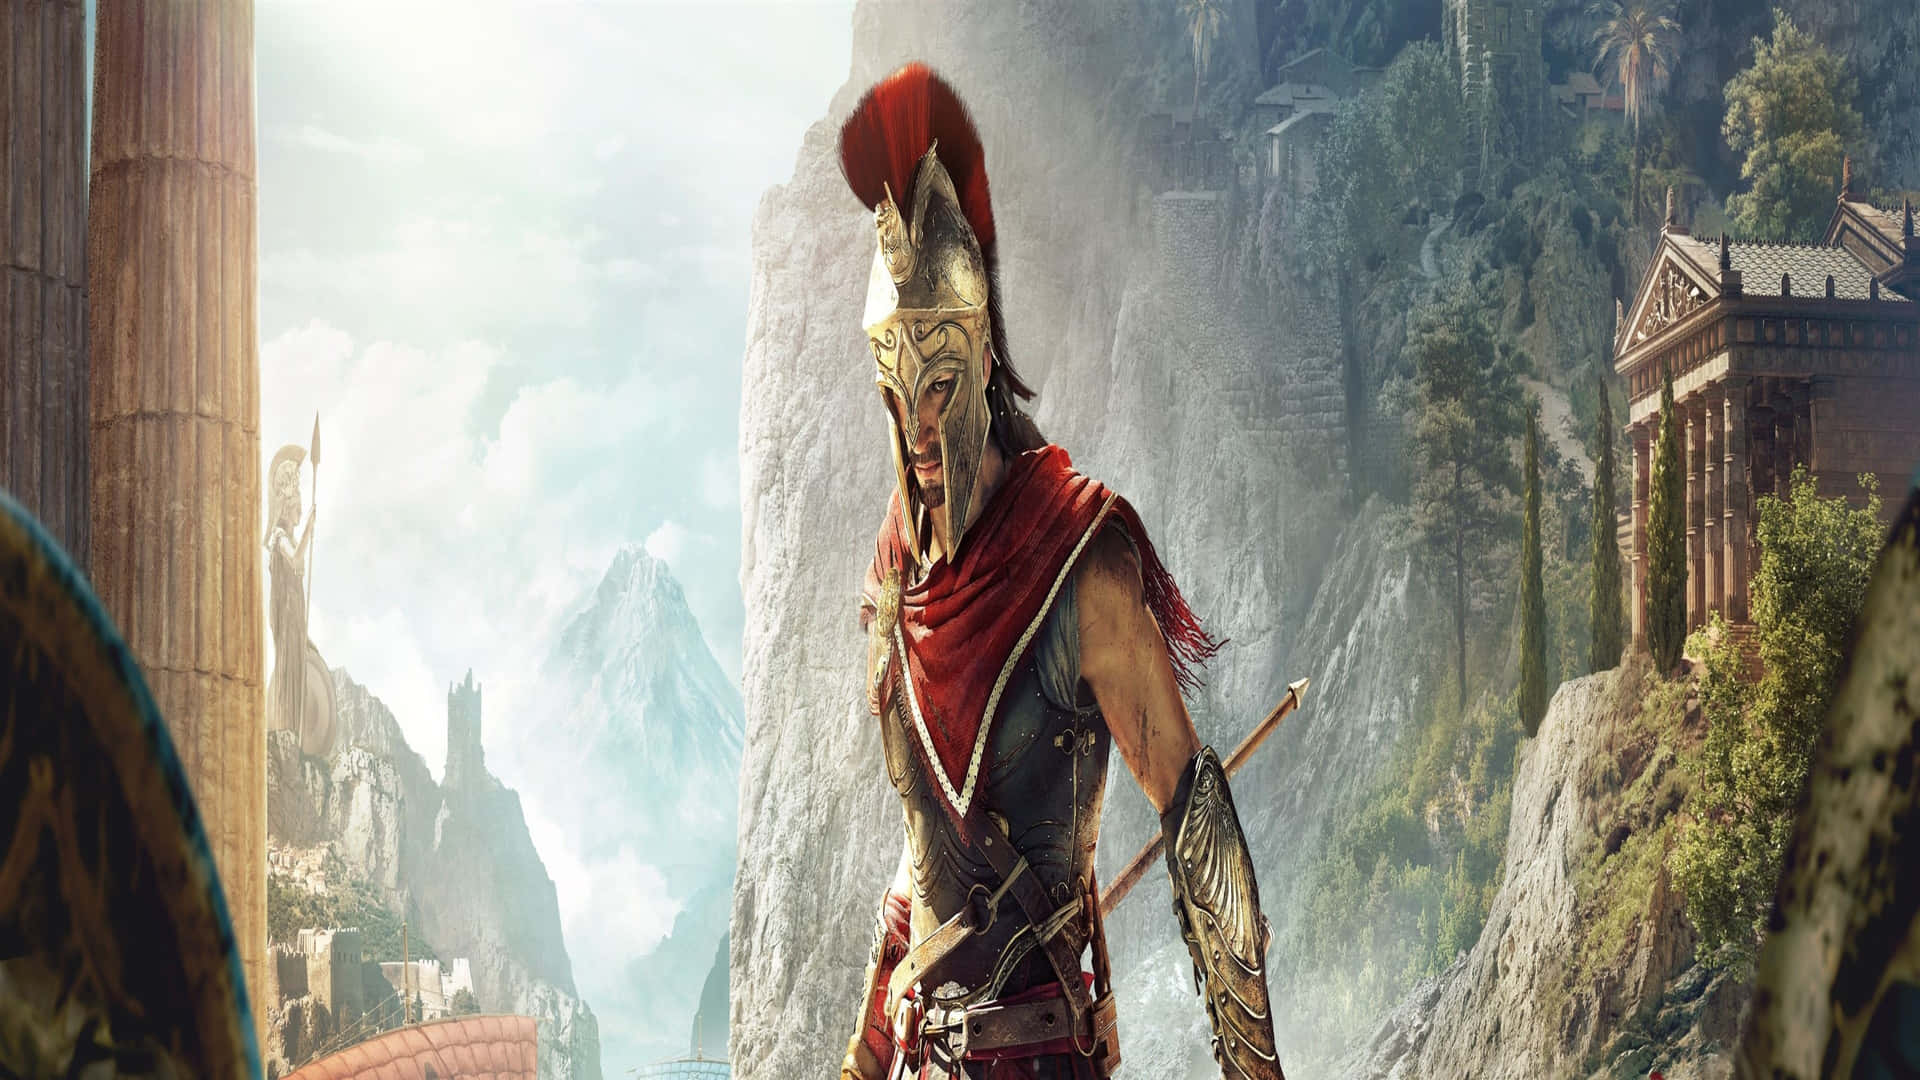 Erlebensie Epische Abenteuer Und Etablieren Sie Sich In 4k Assassin's Creed Odyssey, Indem Sie Alte Streitigkeiten Beilegen.